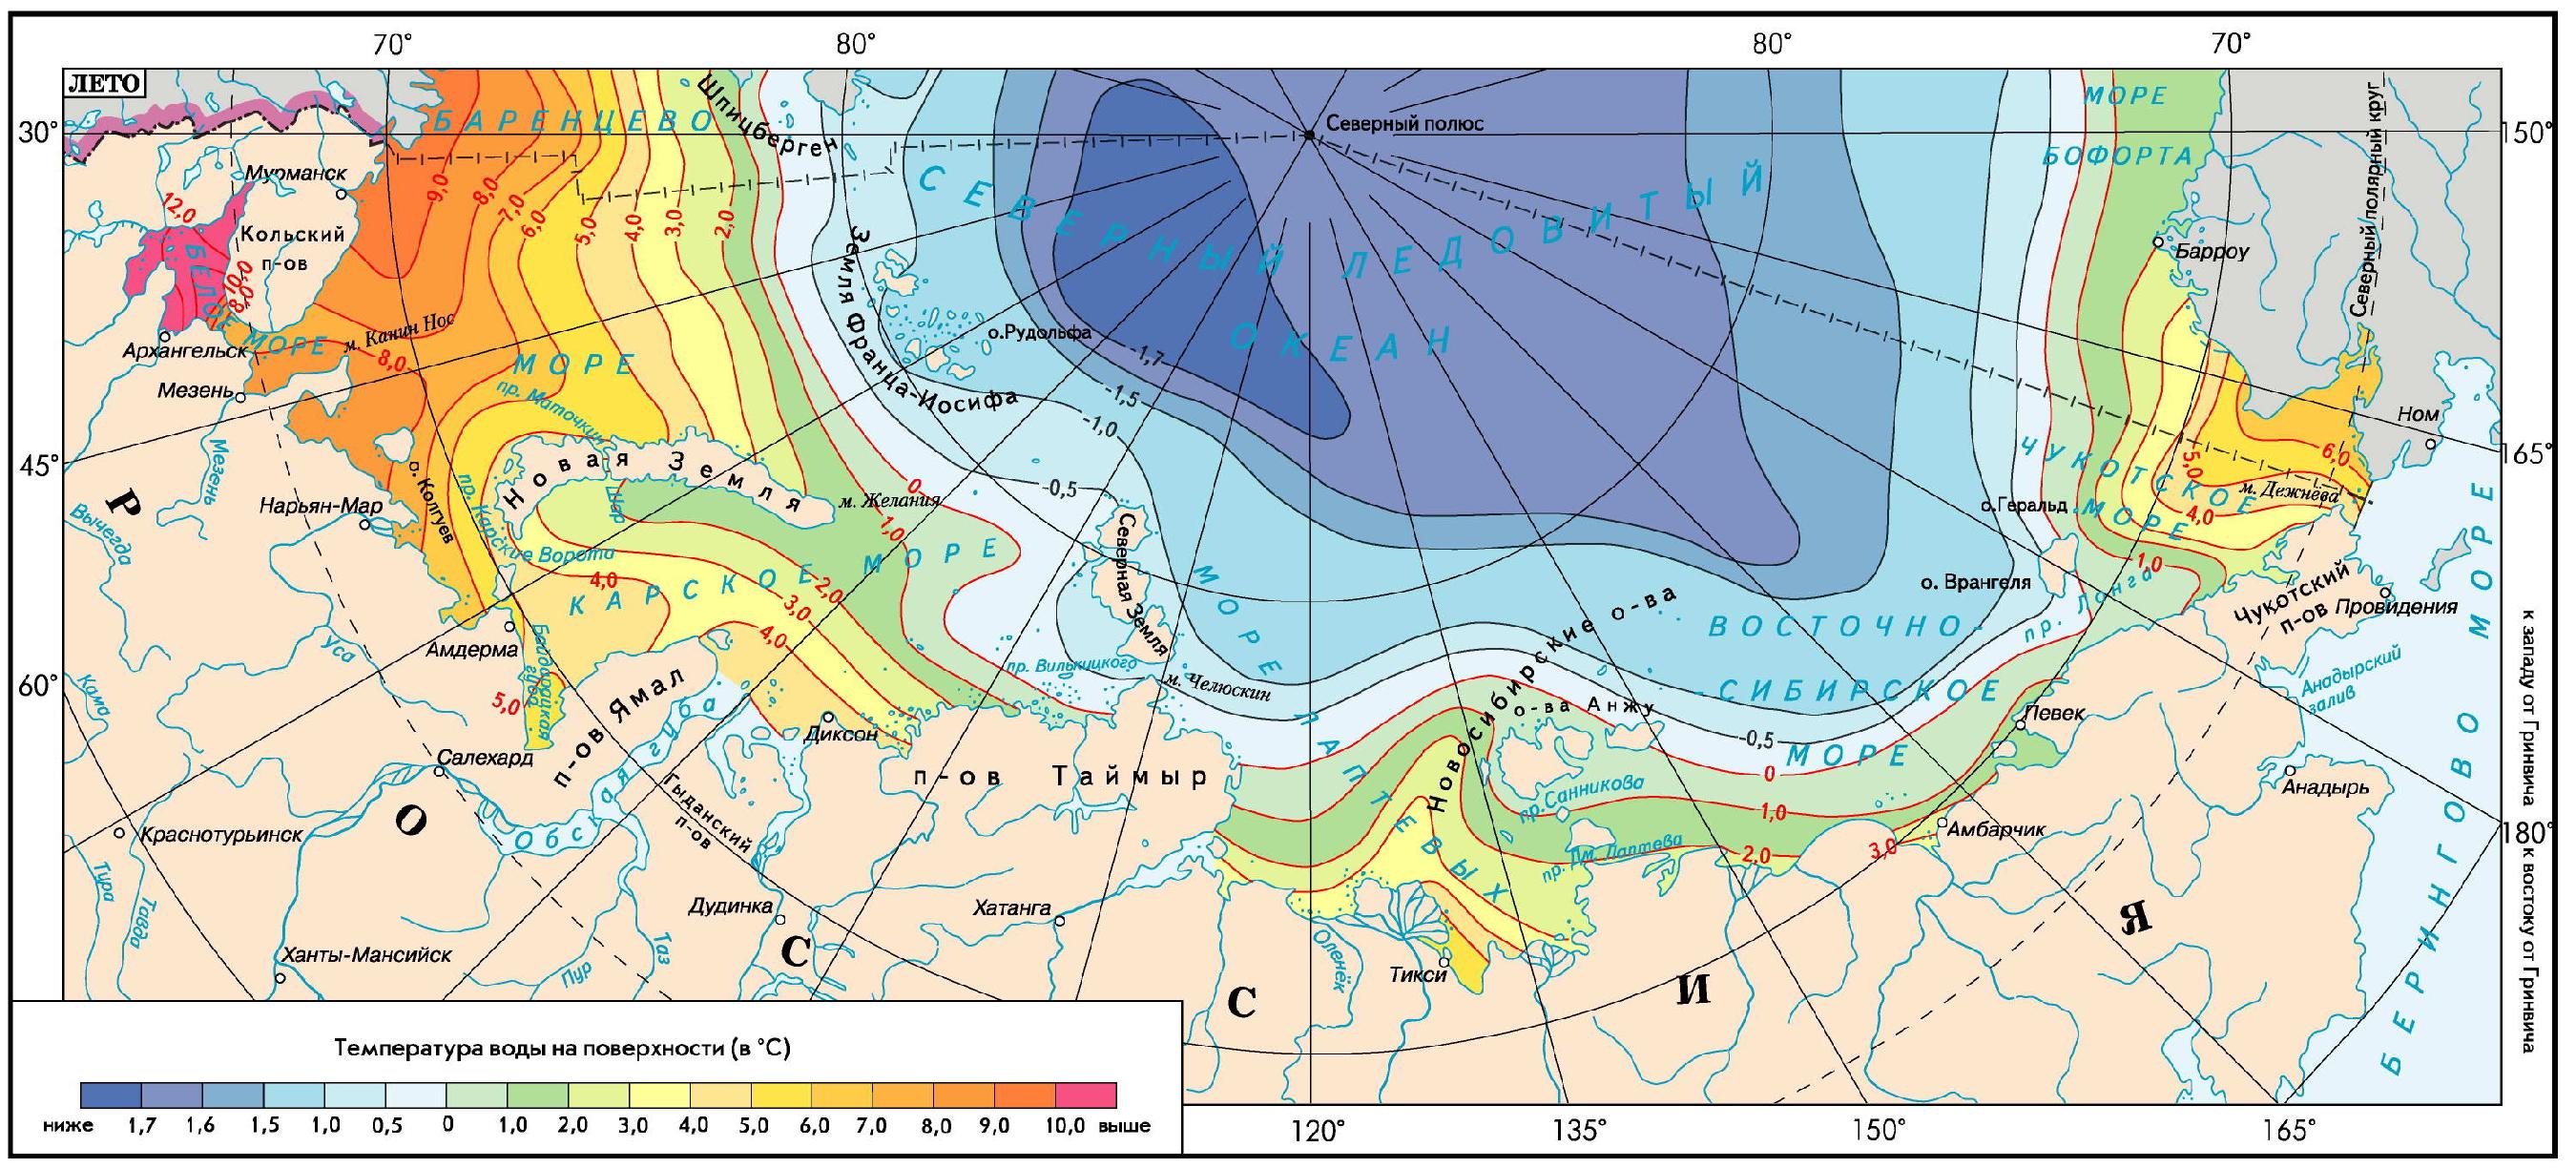 Линия на климатической карте с одинаковым давлением. Климатическая карта Северного Ледовитого океана. Климатические пояса Северного Ледовитого океана. Арктический бассейн Северного Ледовитого океана. Соленость Северного Ледовитого океана.